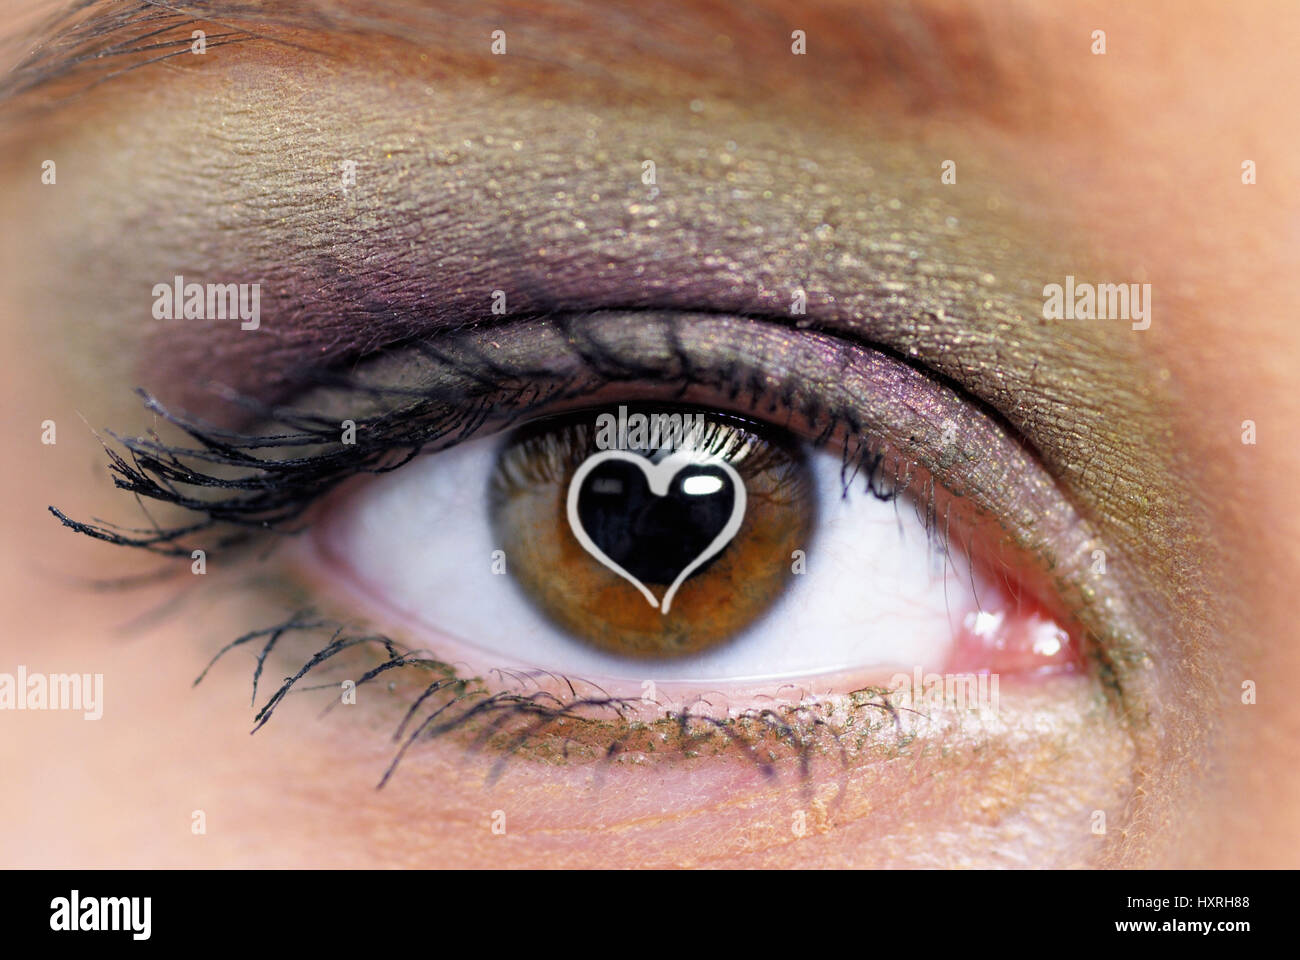 Donna Donne, occhio, occhi, marrone, marrone, fatta, costituito per il make-up, ombretto, ciglia, iridi, Close-Up, Close-Ups, close-up close-up, luminosamente, c Foto Stock